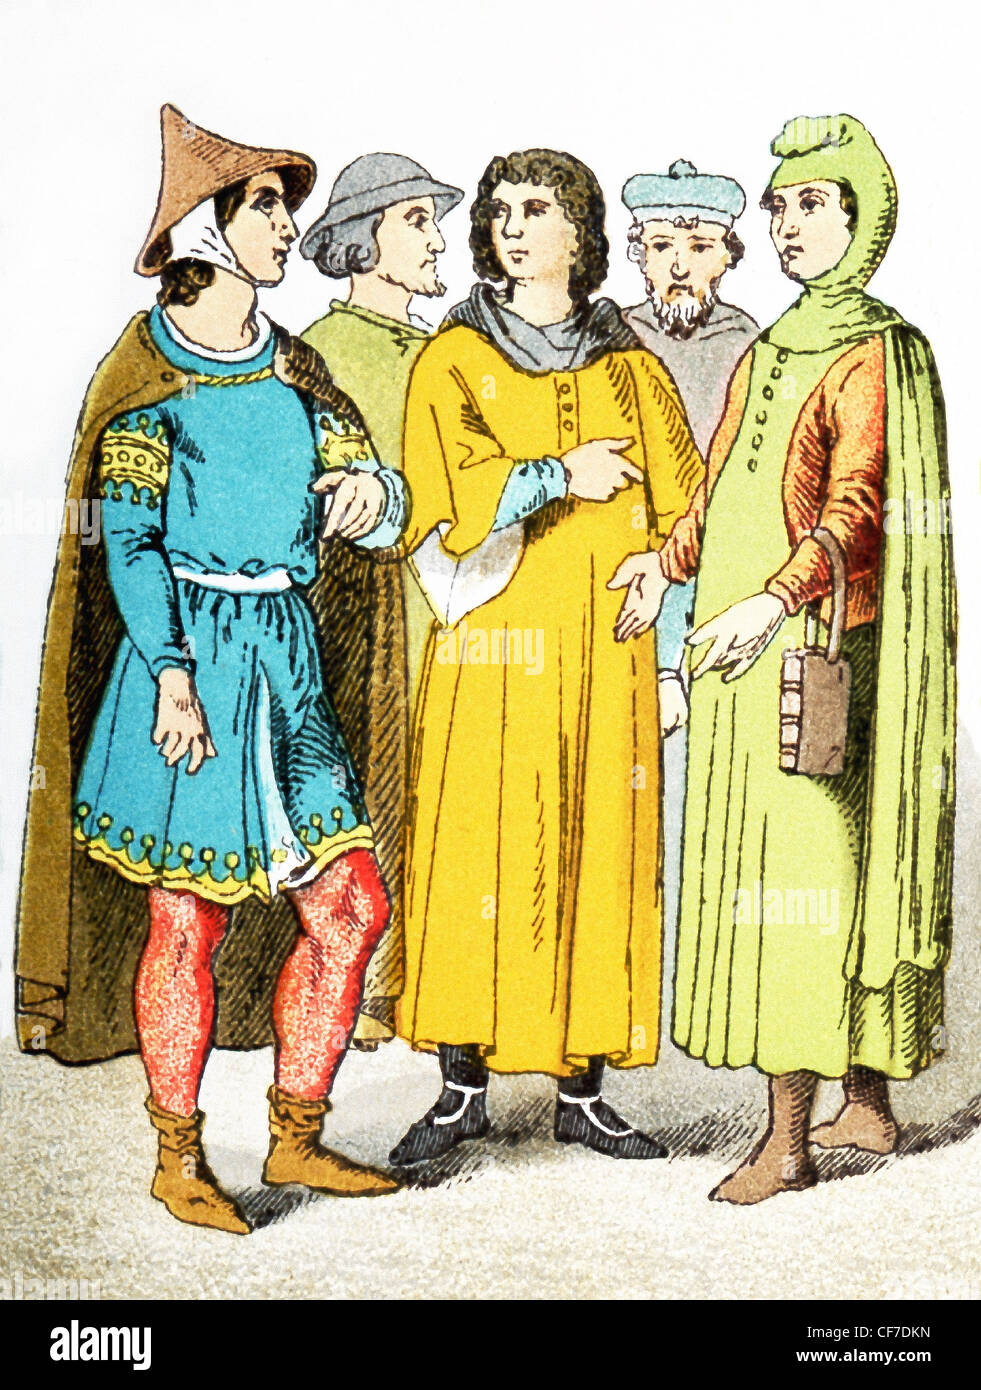 Le figure nell'illustrazione rappresentano cinque cittadini francesi circa A.D. 1200. L'illustrazione risale al 1882. Foto Stock